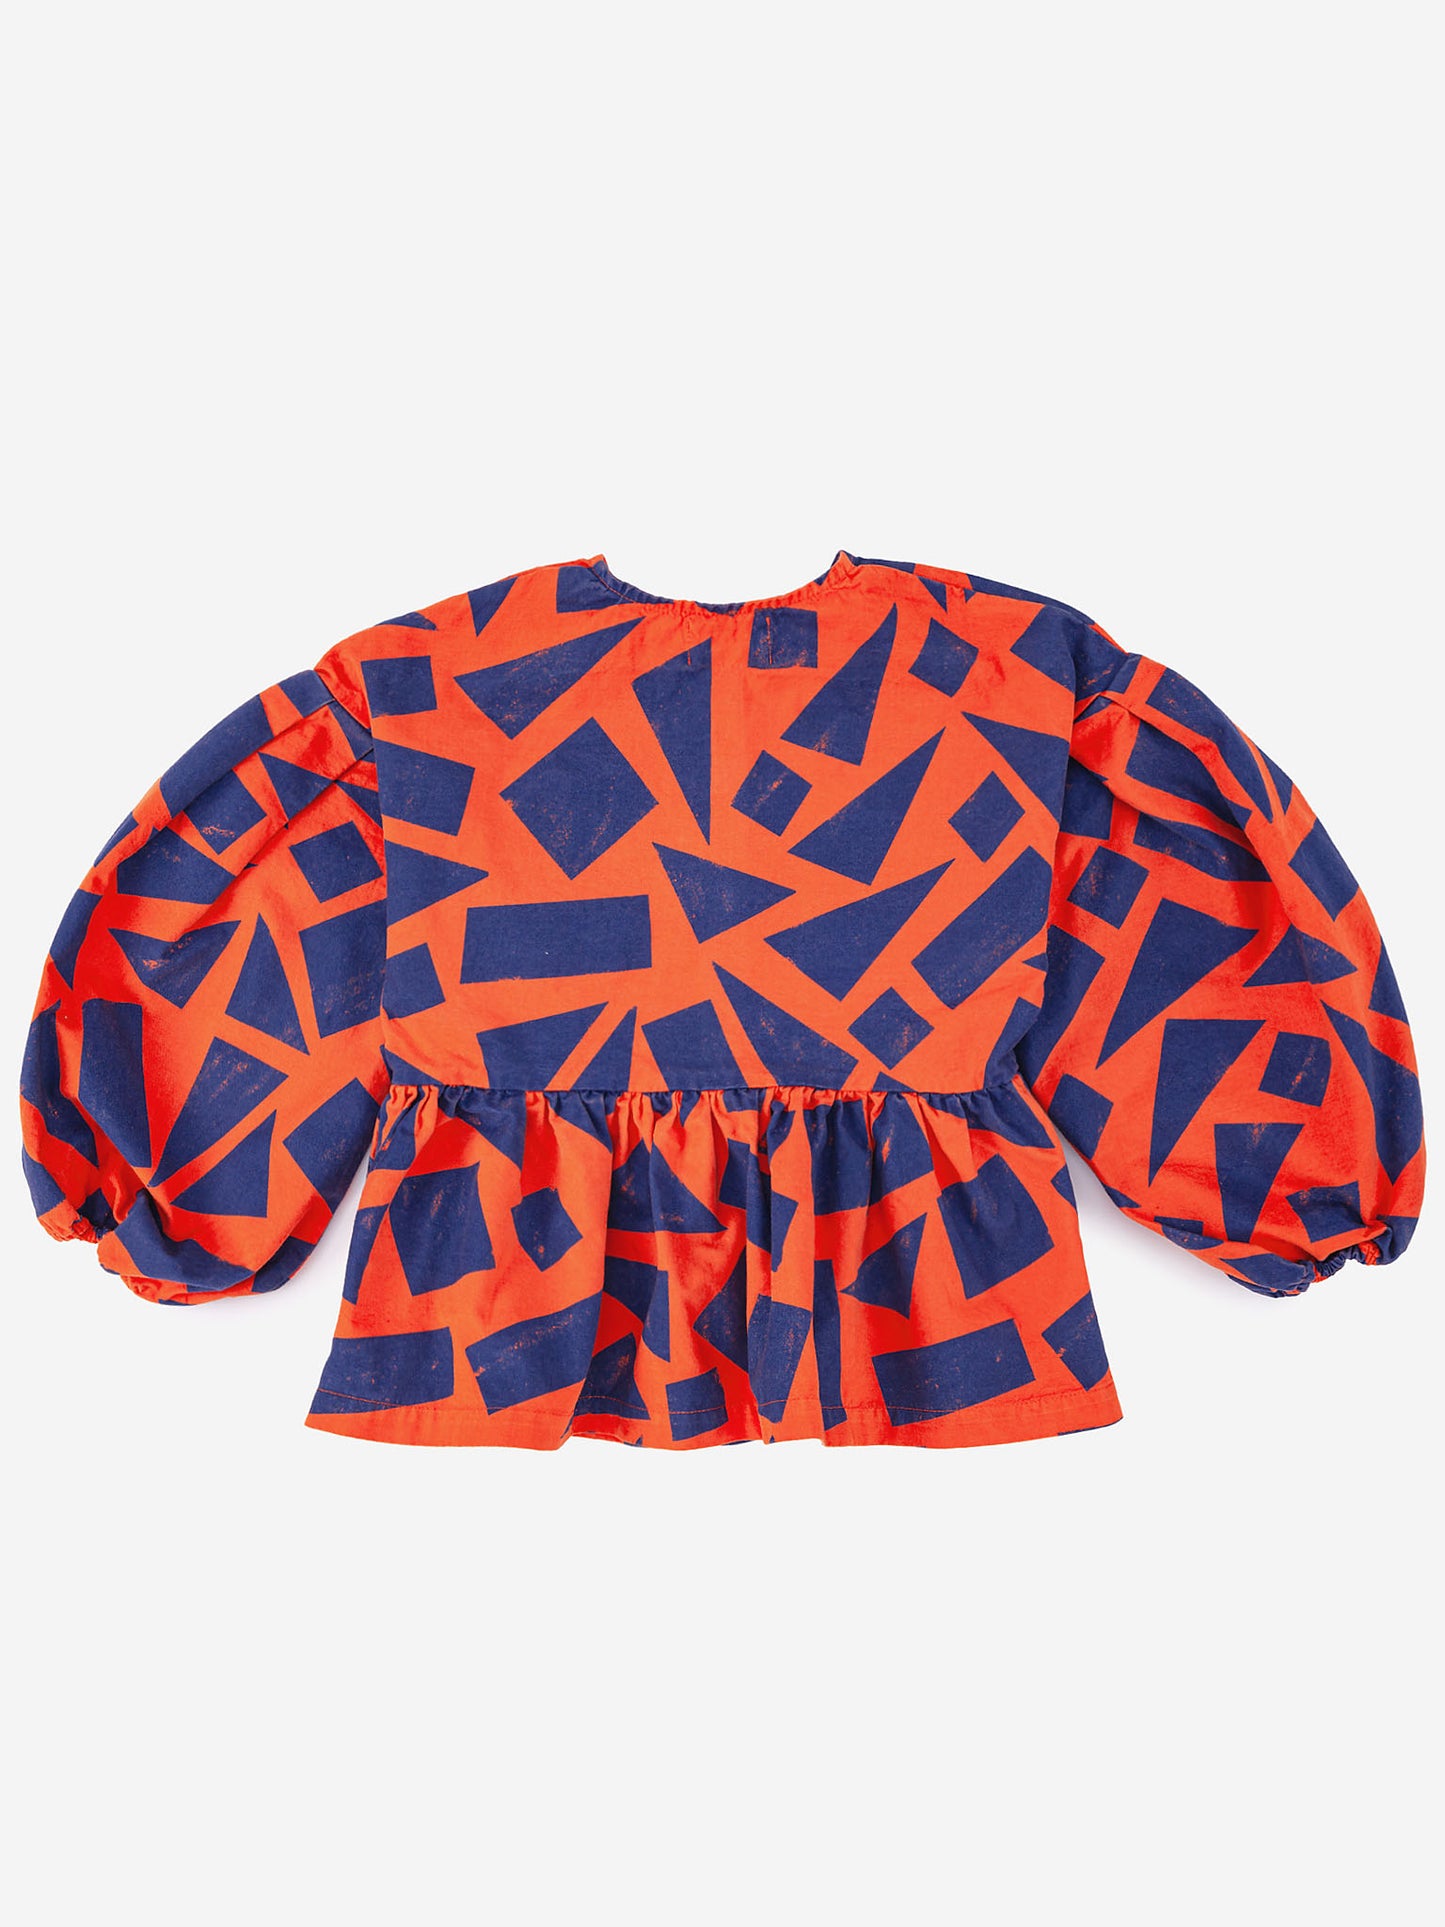 Geometric peplum shirt